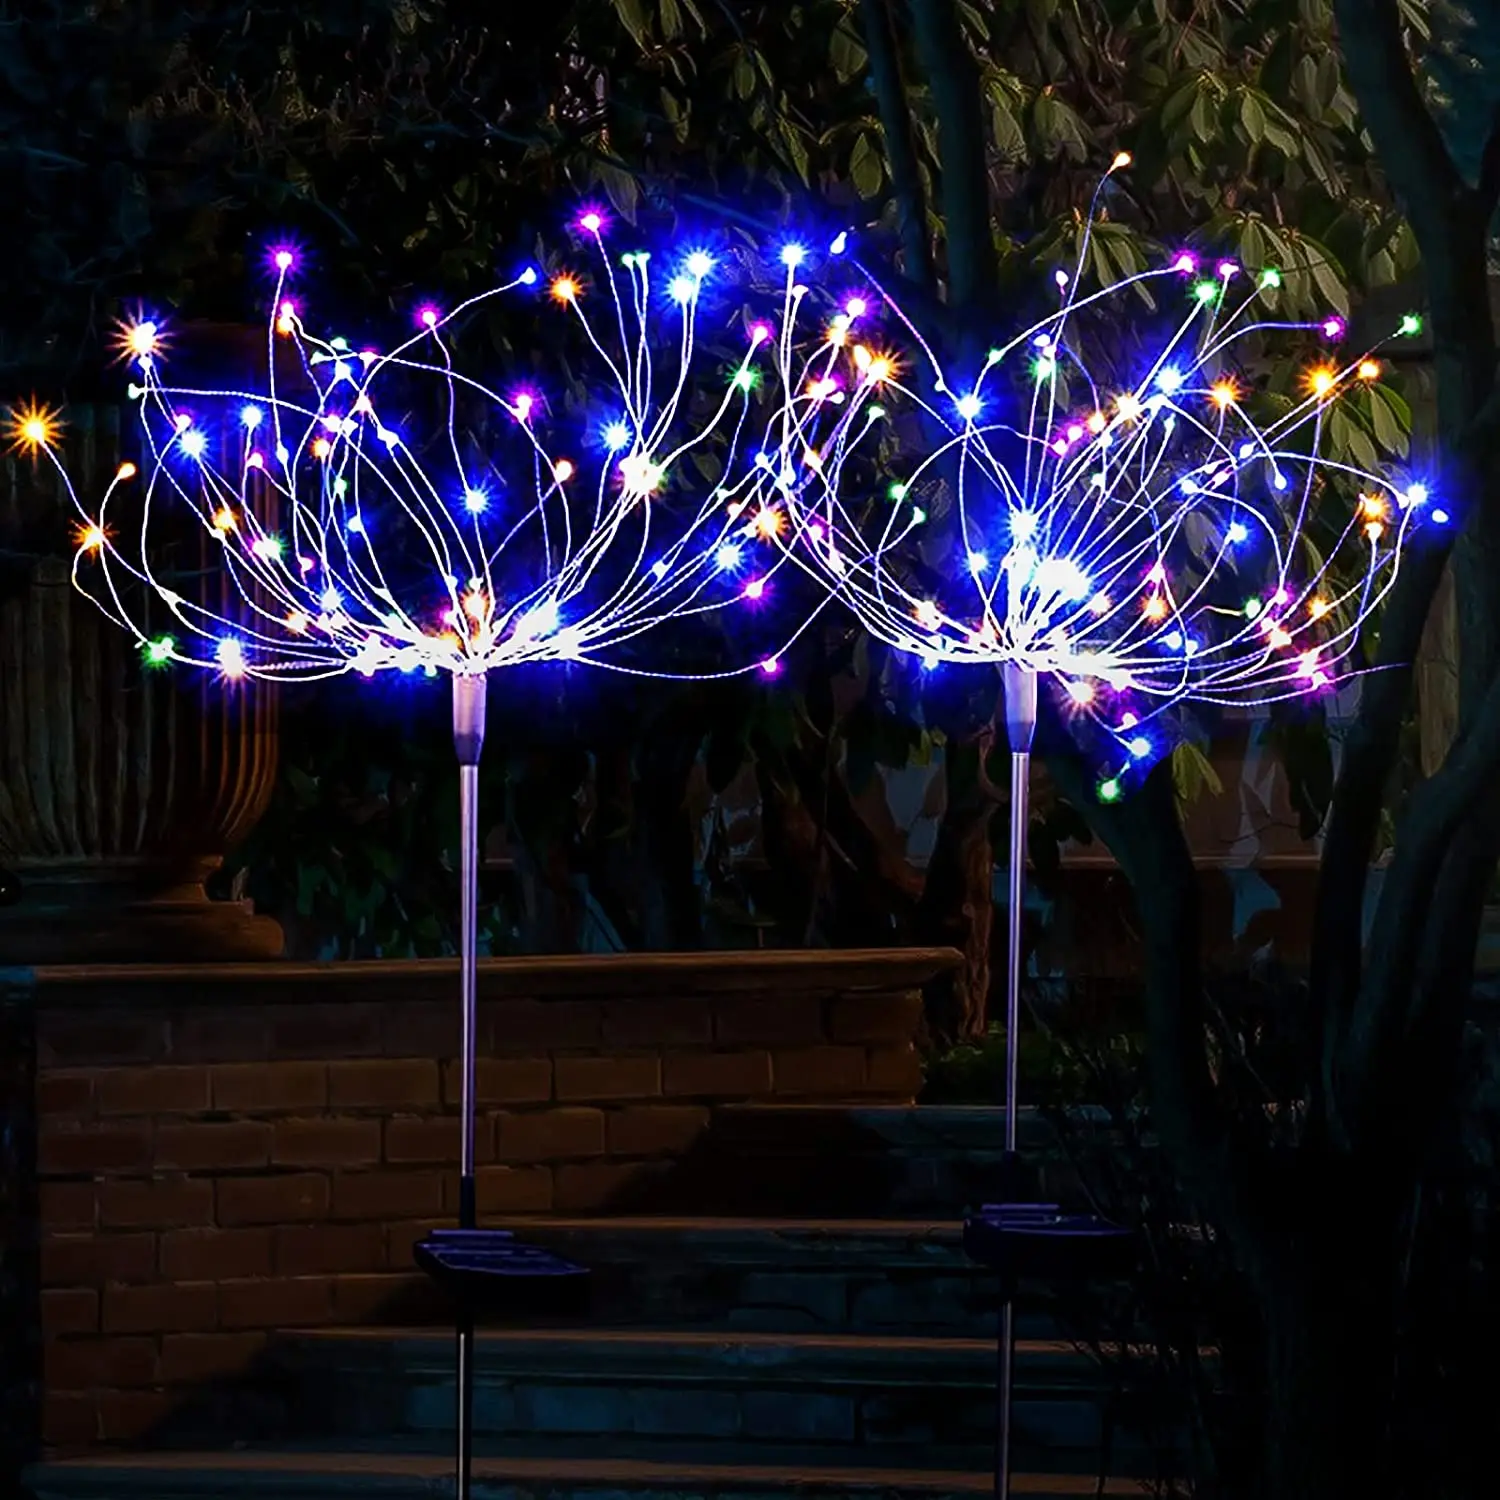 

Solar LED Light Outdoor Garden Lighting Dandelion Fireworks Decoration Lamp For Garden Terrace Landscape Christmas Decor 90leds